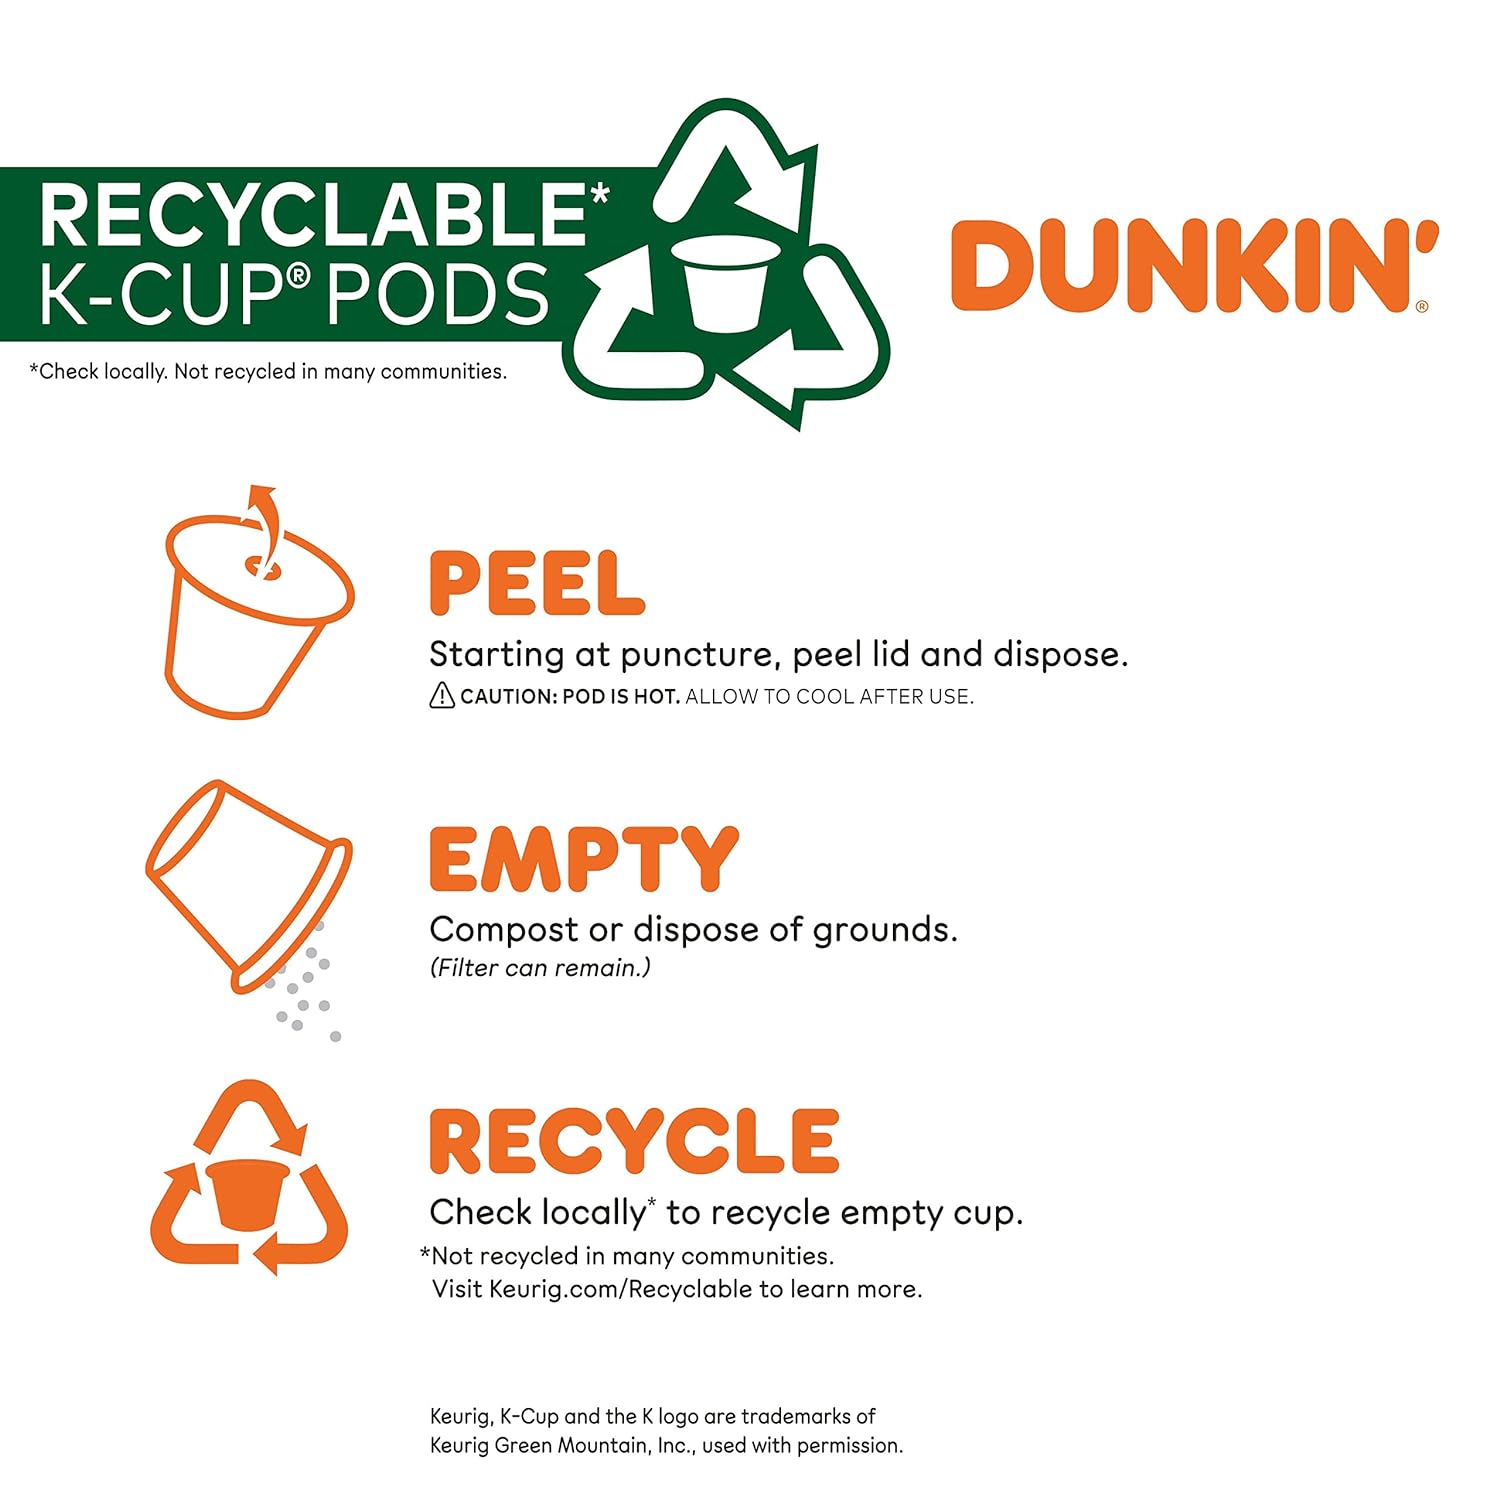 Dunkin' Original Blend Medium Roast Coffee, 176 Keurig K-Cup Pods : Grocery & Gourmet Food